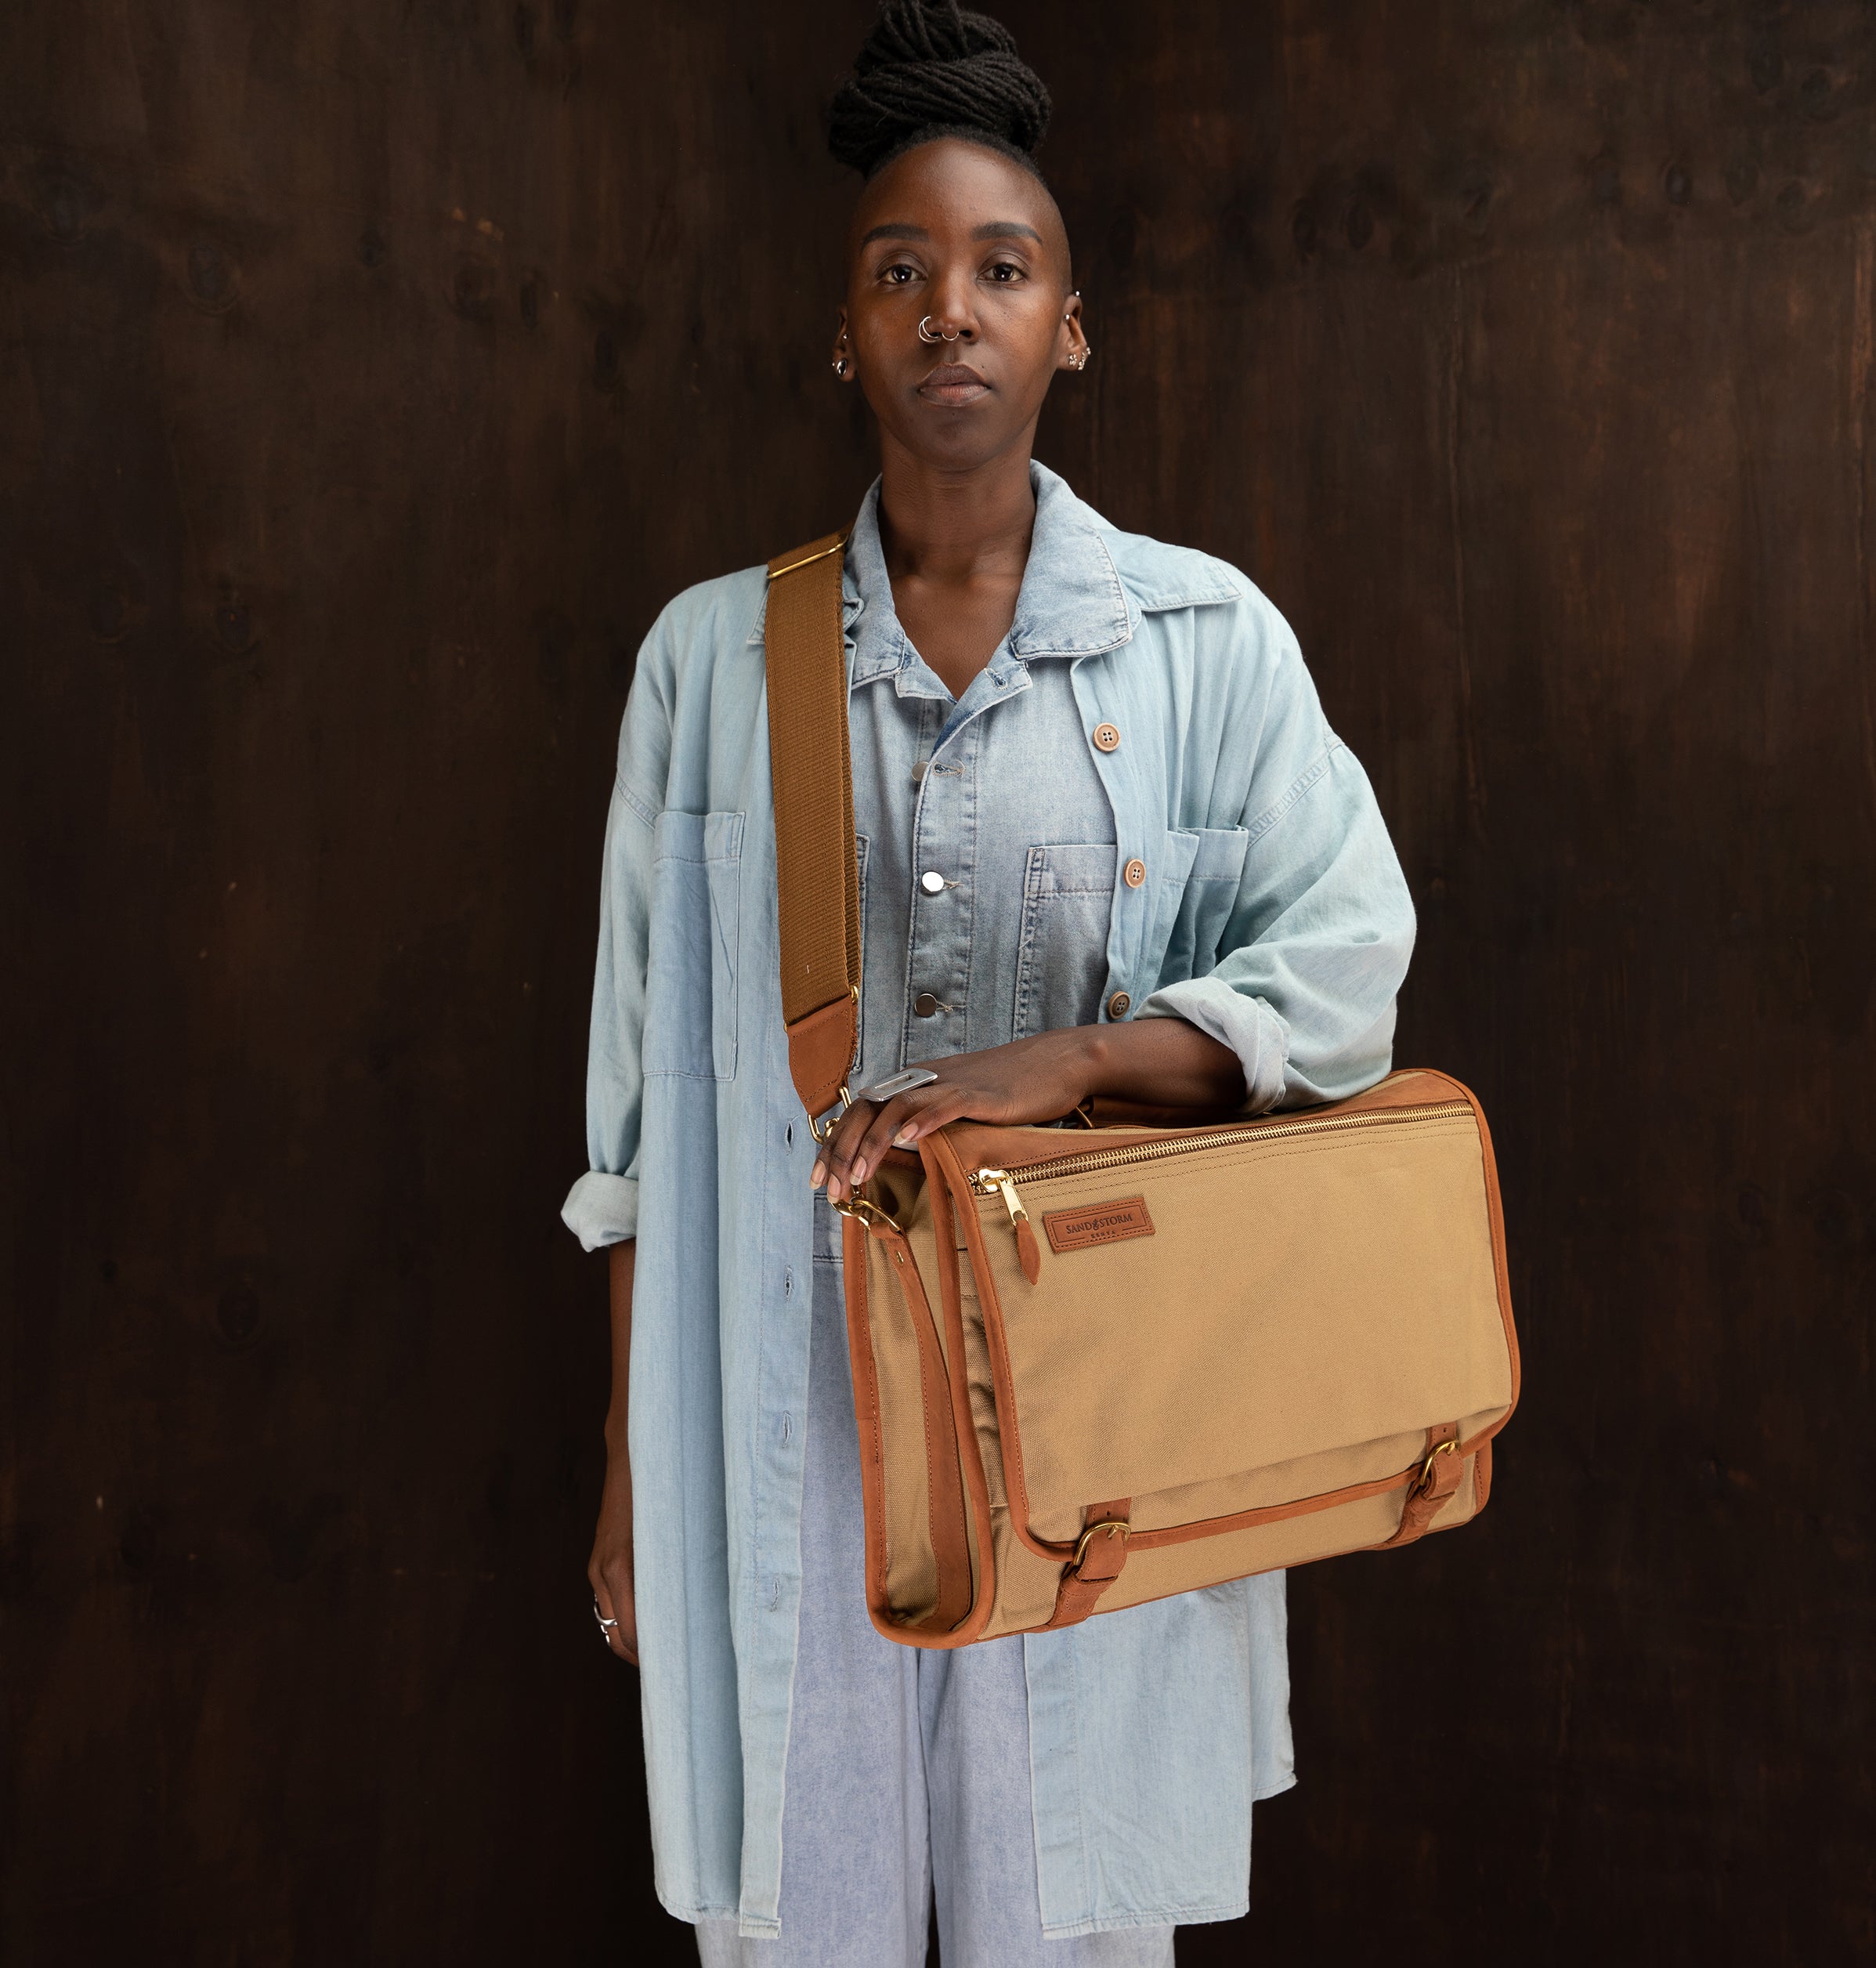 Canvas Executive Briefcase - Sandstorm Kenya (KE)